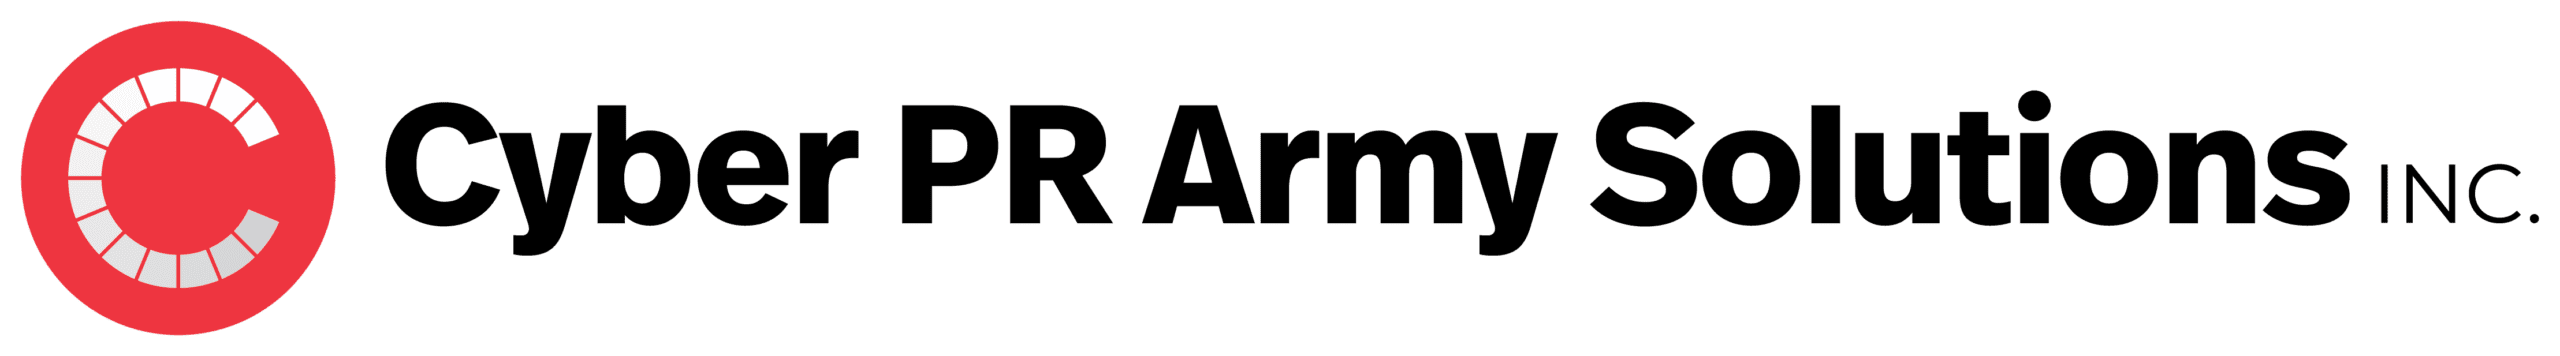 Cyber PR Army Solutions Inc logo